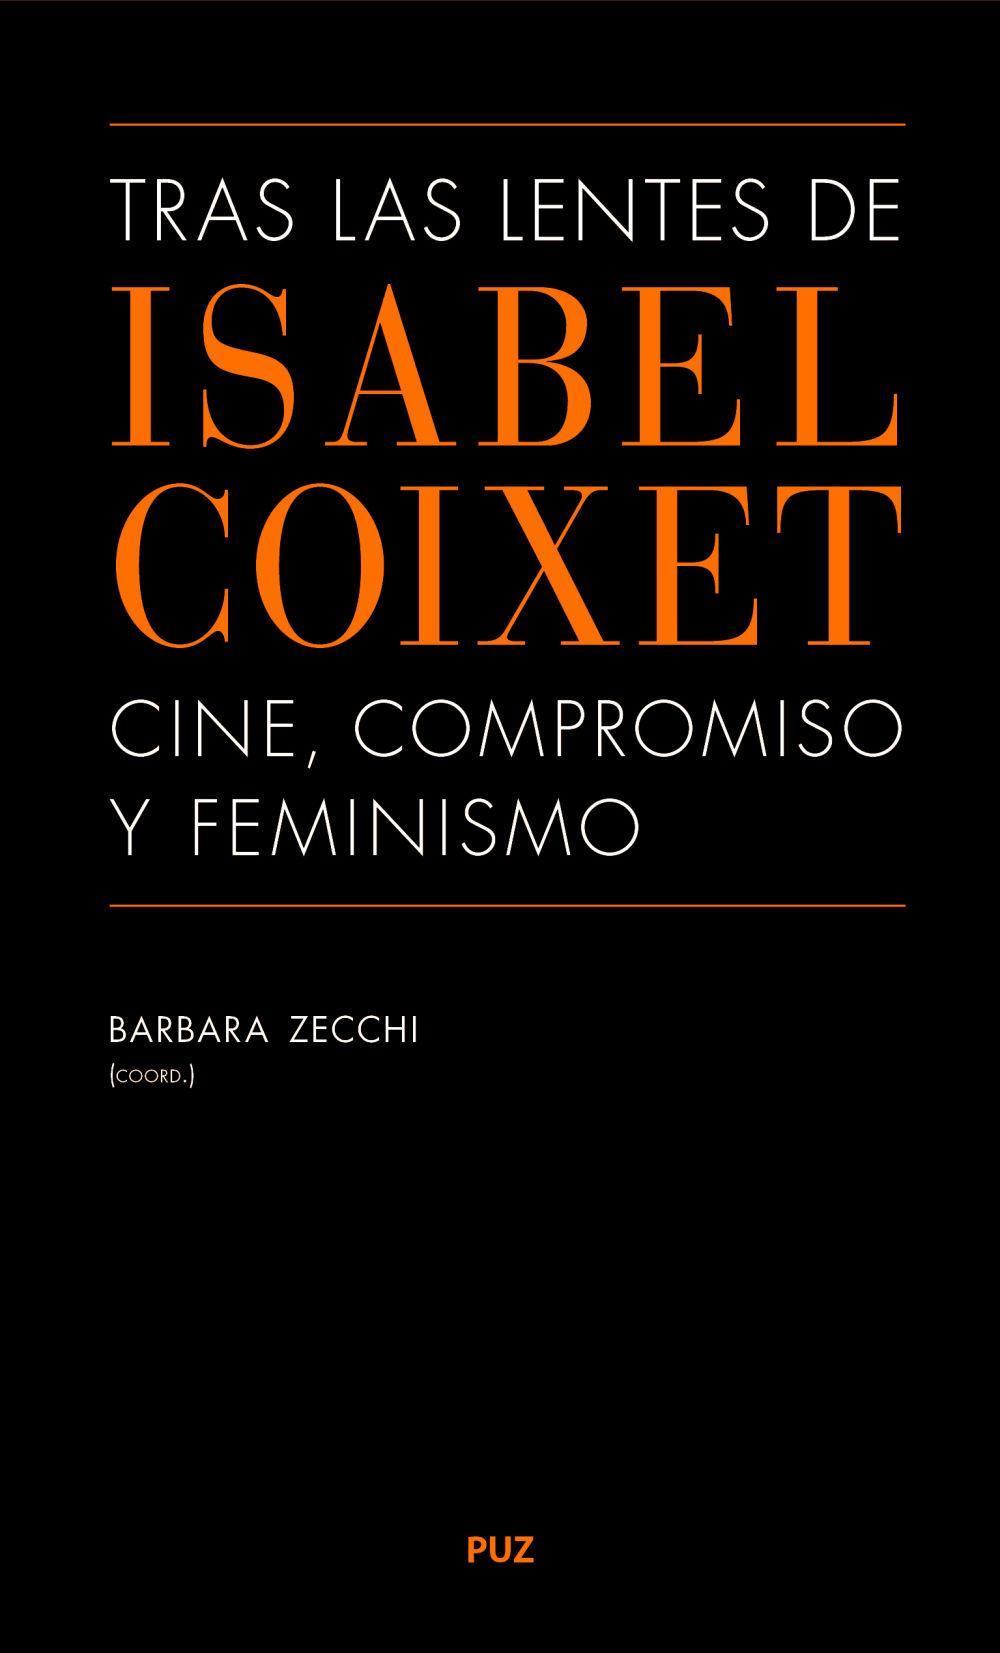 Tras las lentes de Isabel Coixet : cine, compromiso y feminismo